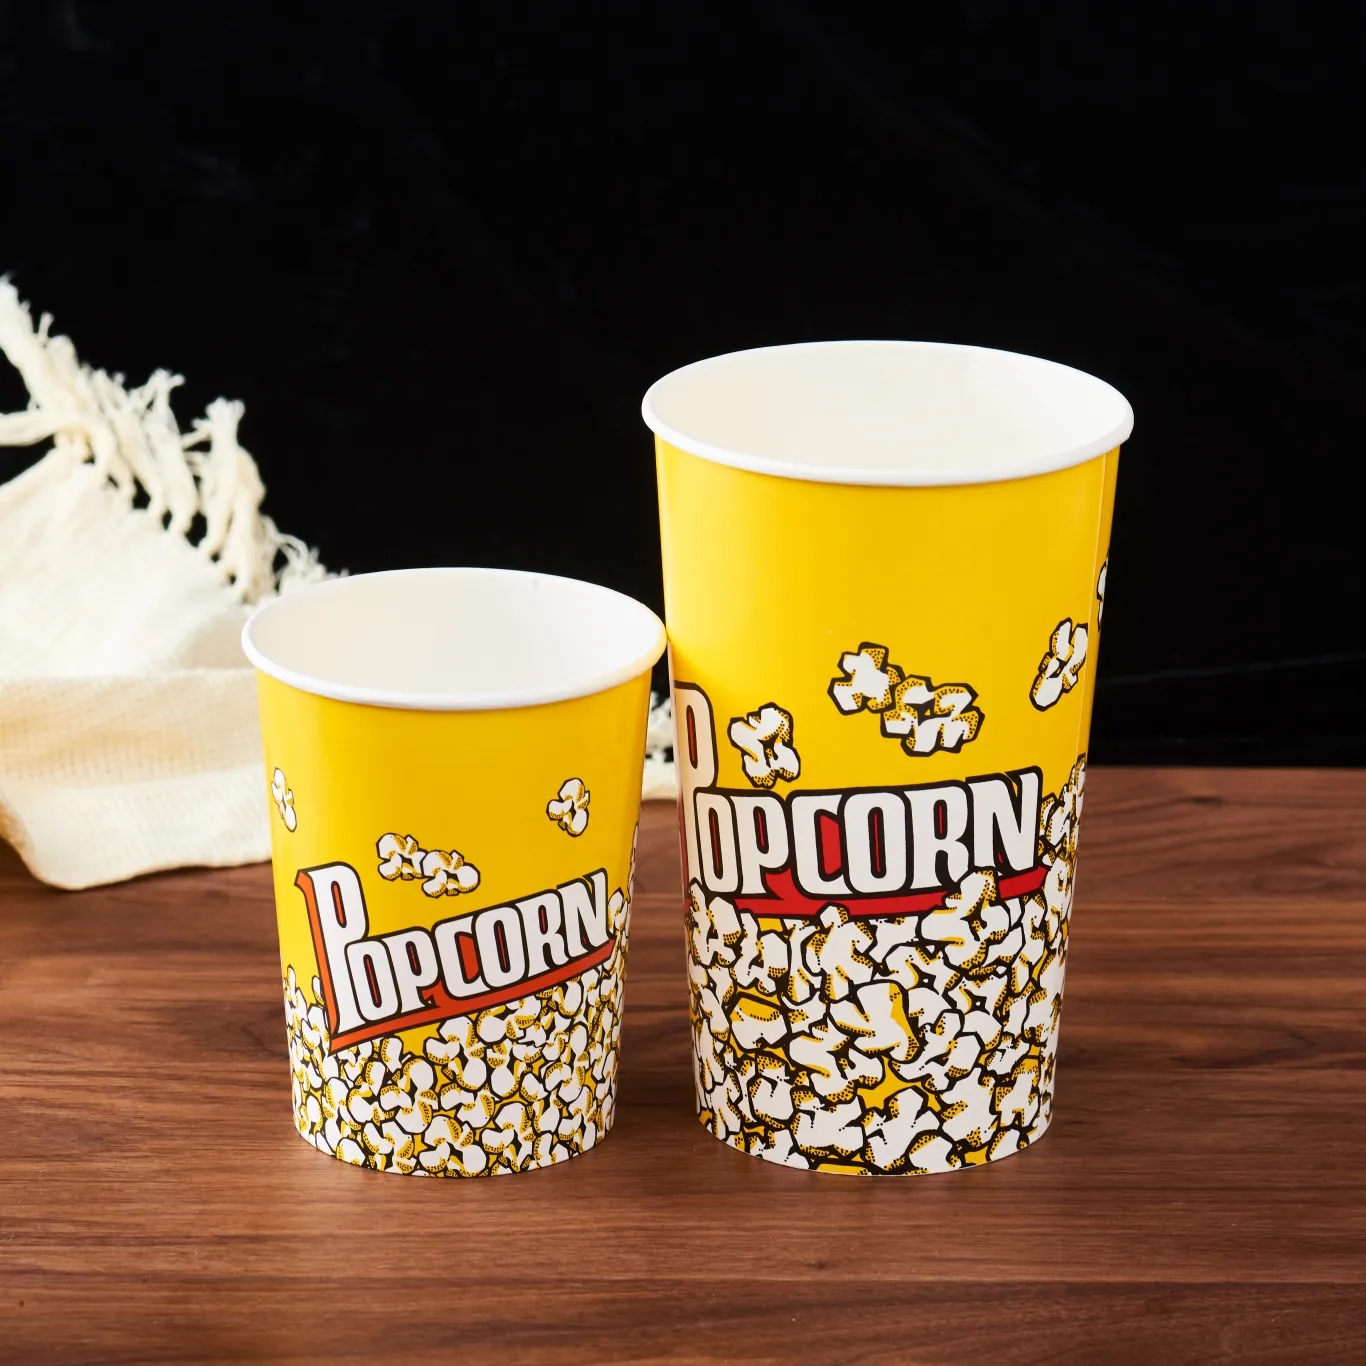 Einweg-Lebensmittel behälter zum Mitnehmen Benutzer definierte runde Popcorn-Papiere imer